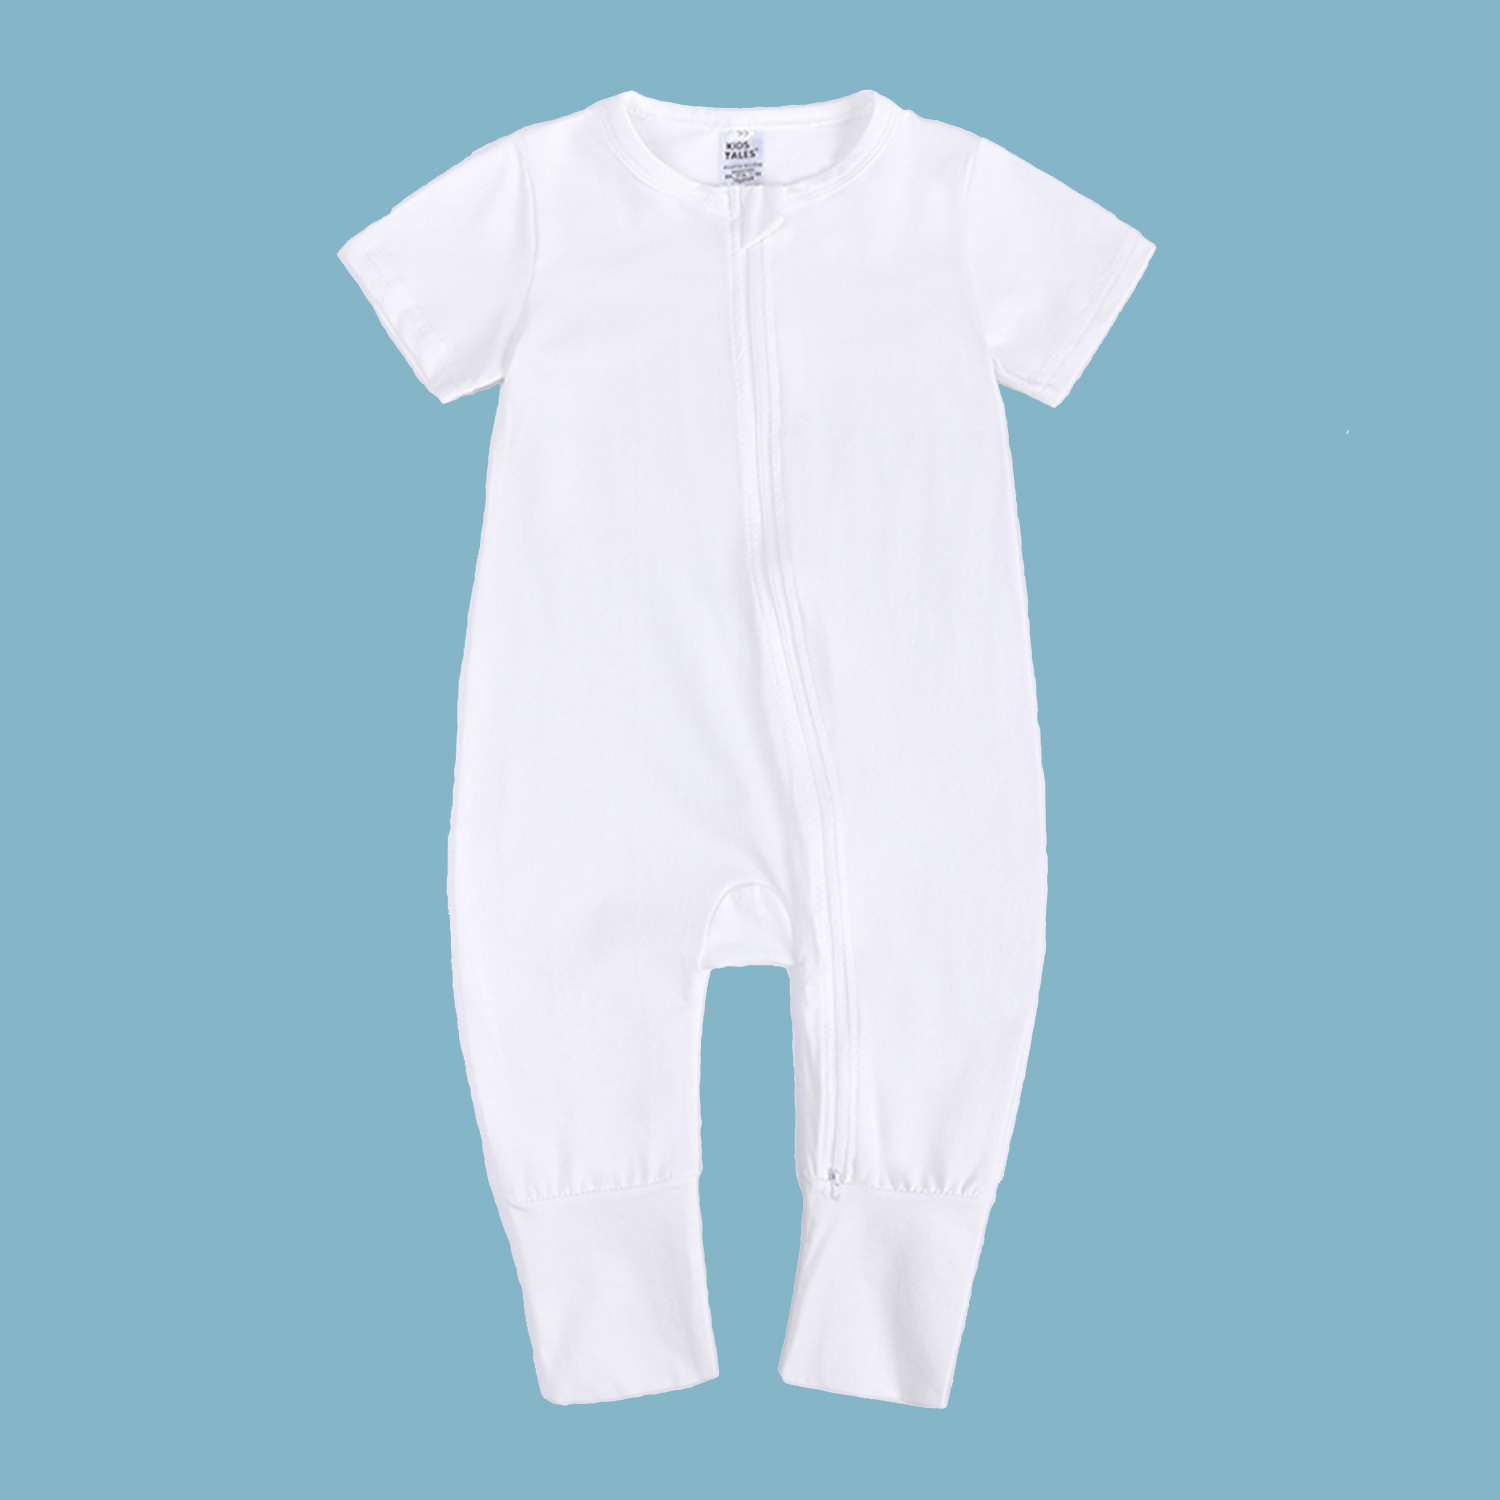 Kids Tales - Best baby romper white 18-24mo cotton double zipper infant bodysuit sleeper boy